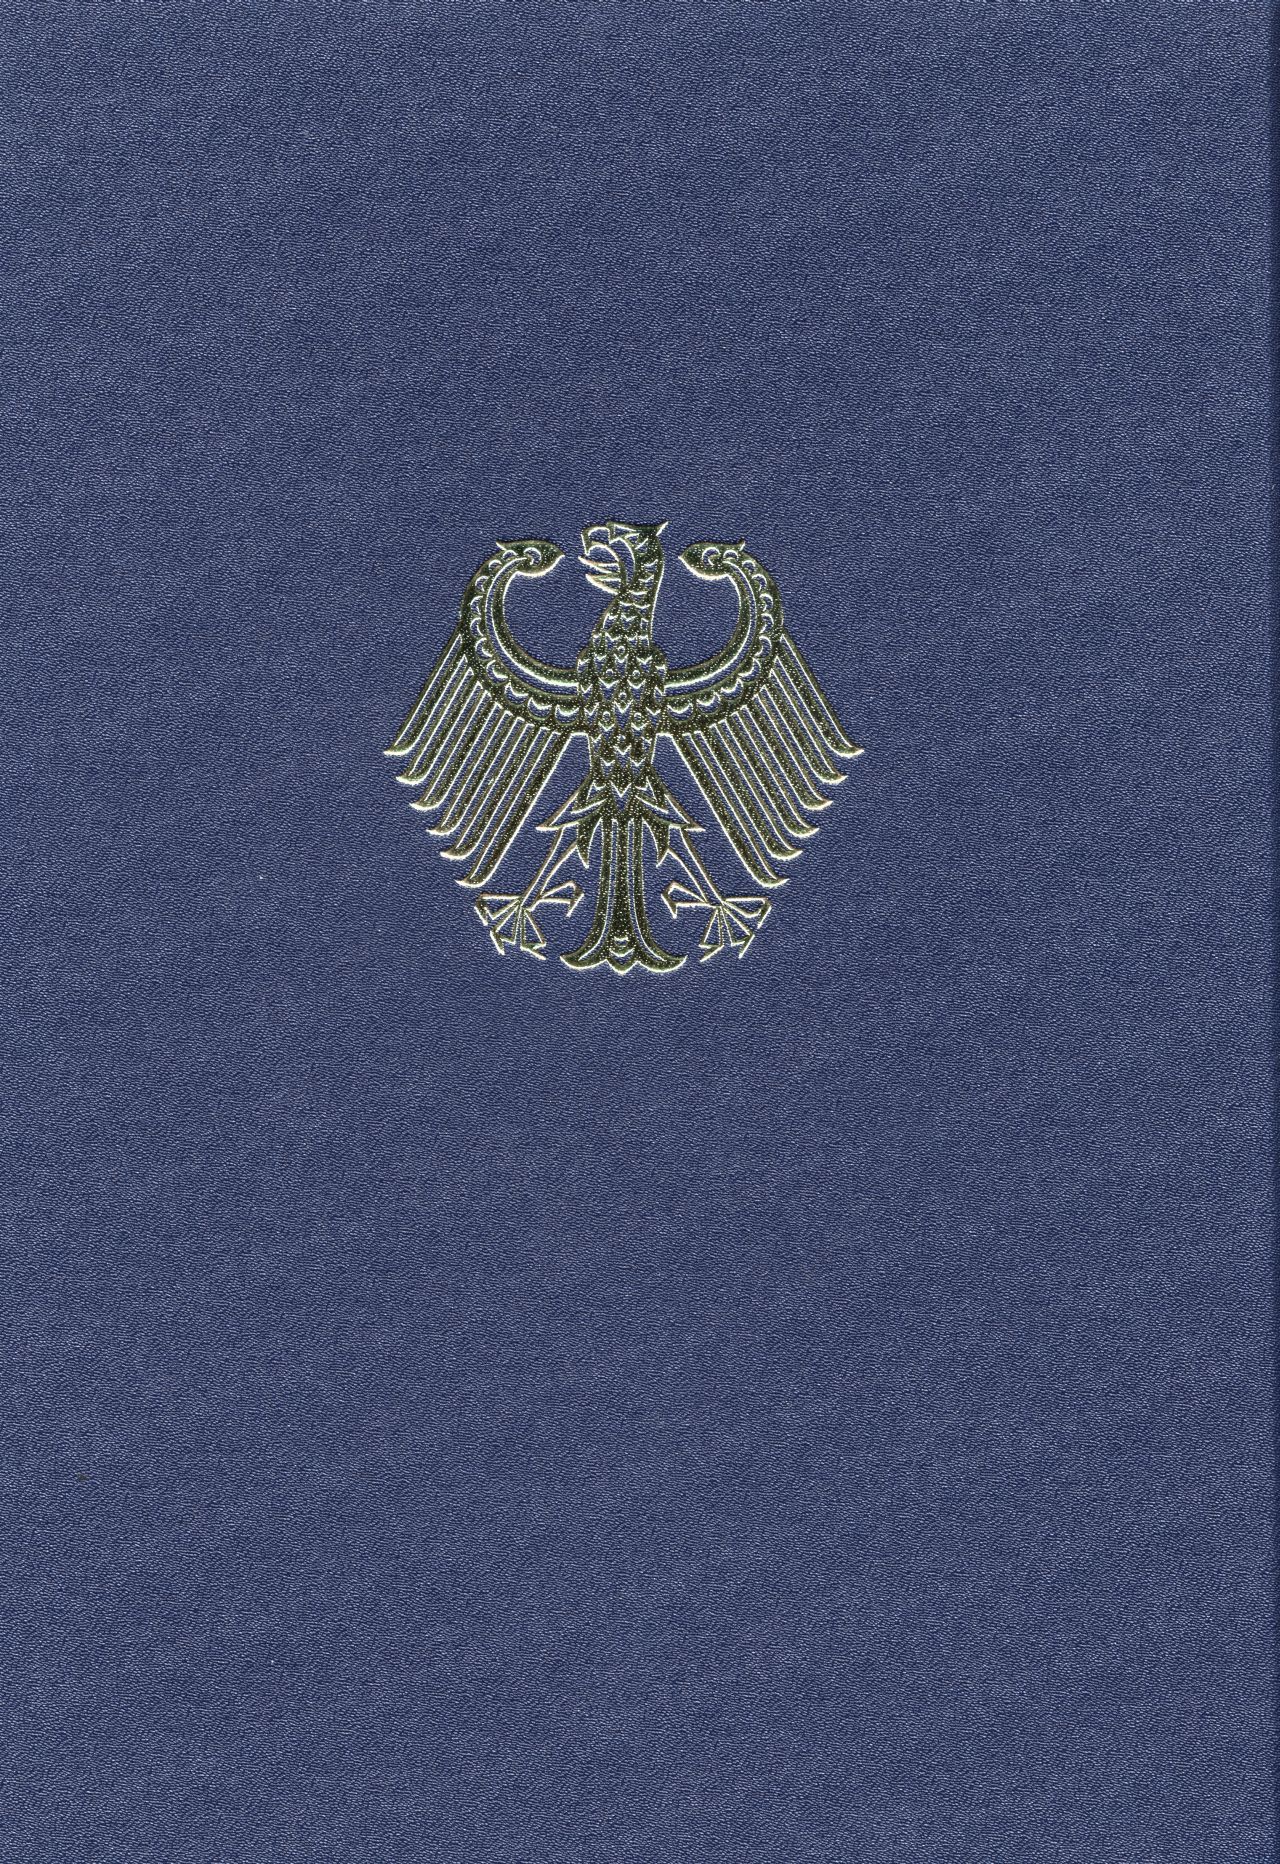 In einer dunkelblauen Mappe mit dem Bundesadler (Goldprägung) auf der Vorderseite befindet sich der Vertrag zwischen der Bundesrepublik Deutschland und der Deutschen Demokratischen Republik über die Herstellung der Einheit Deutschlands.